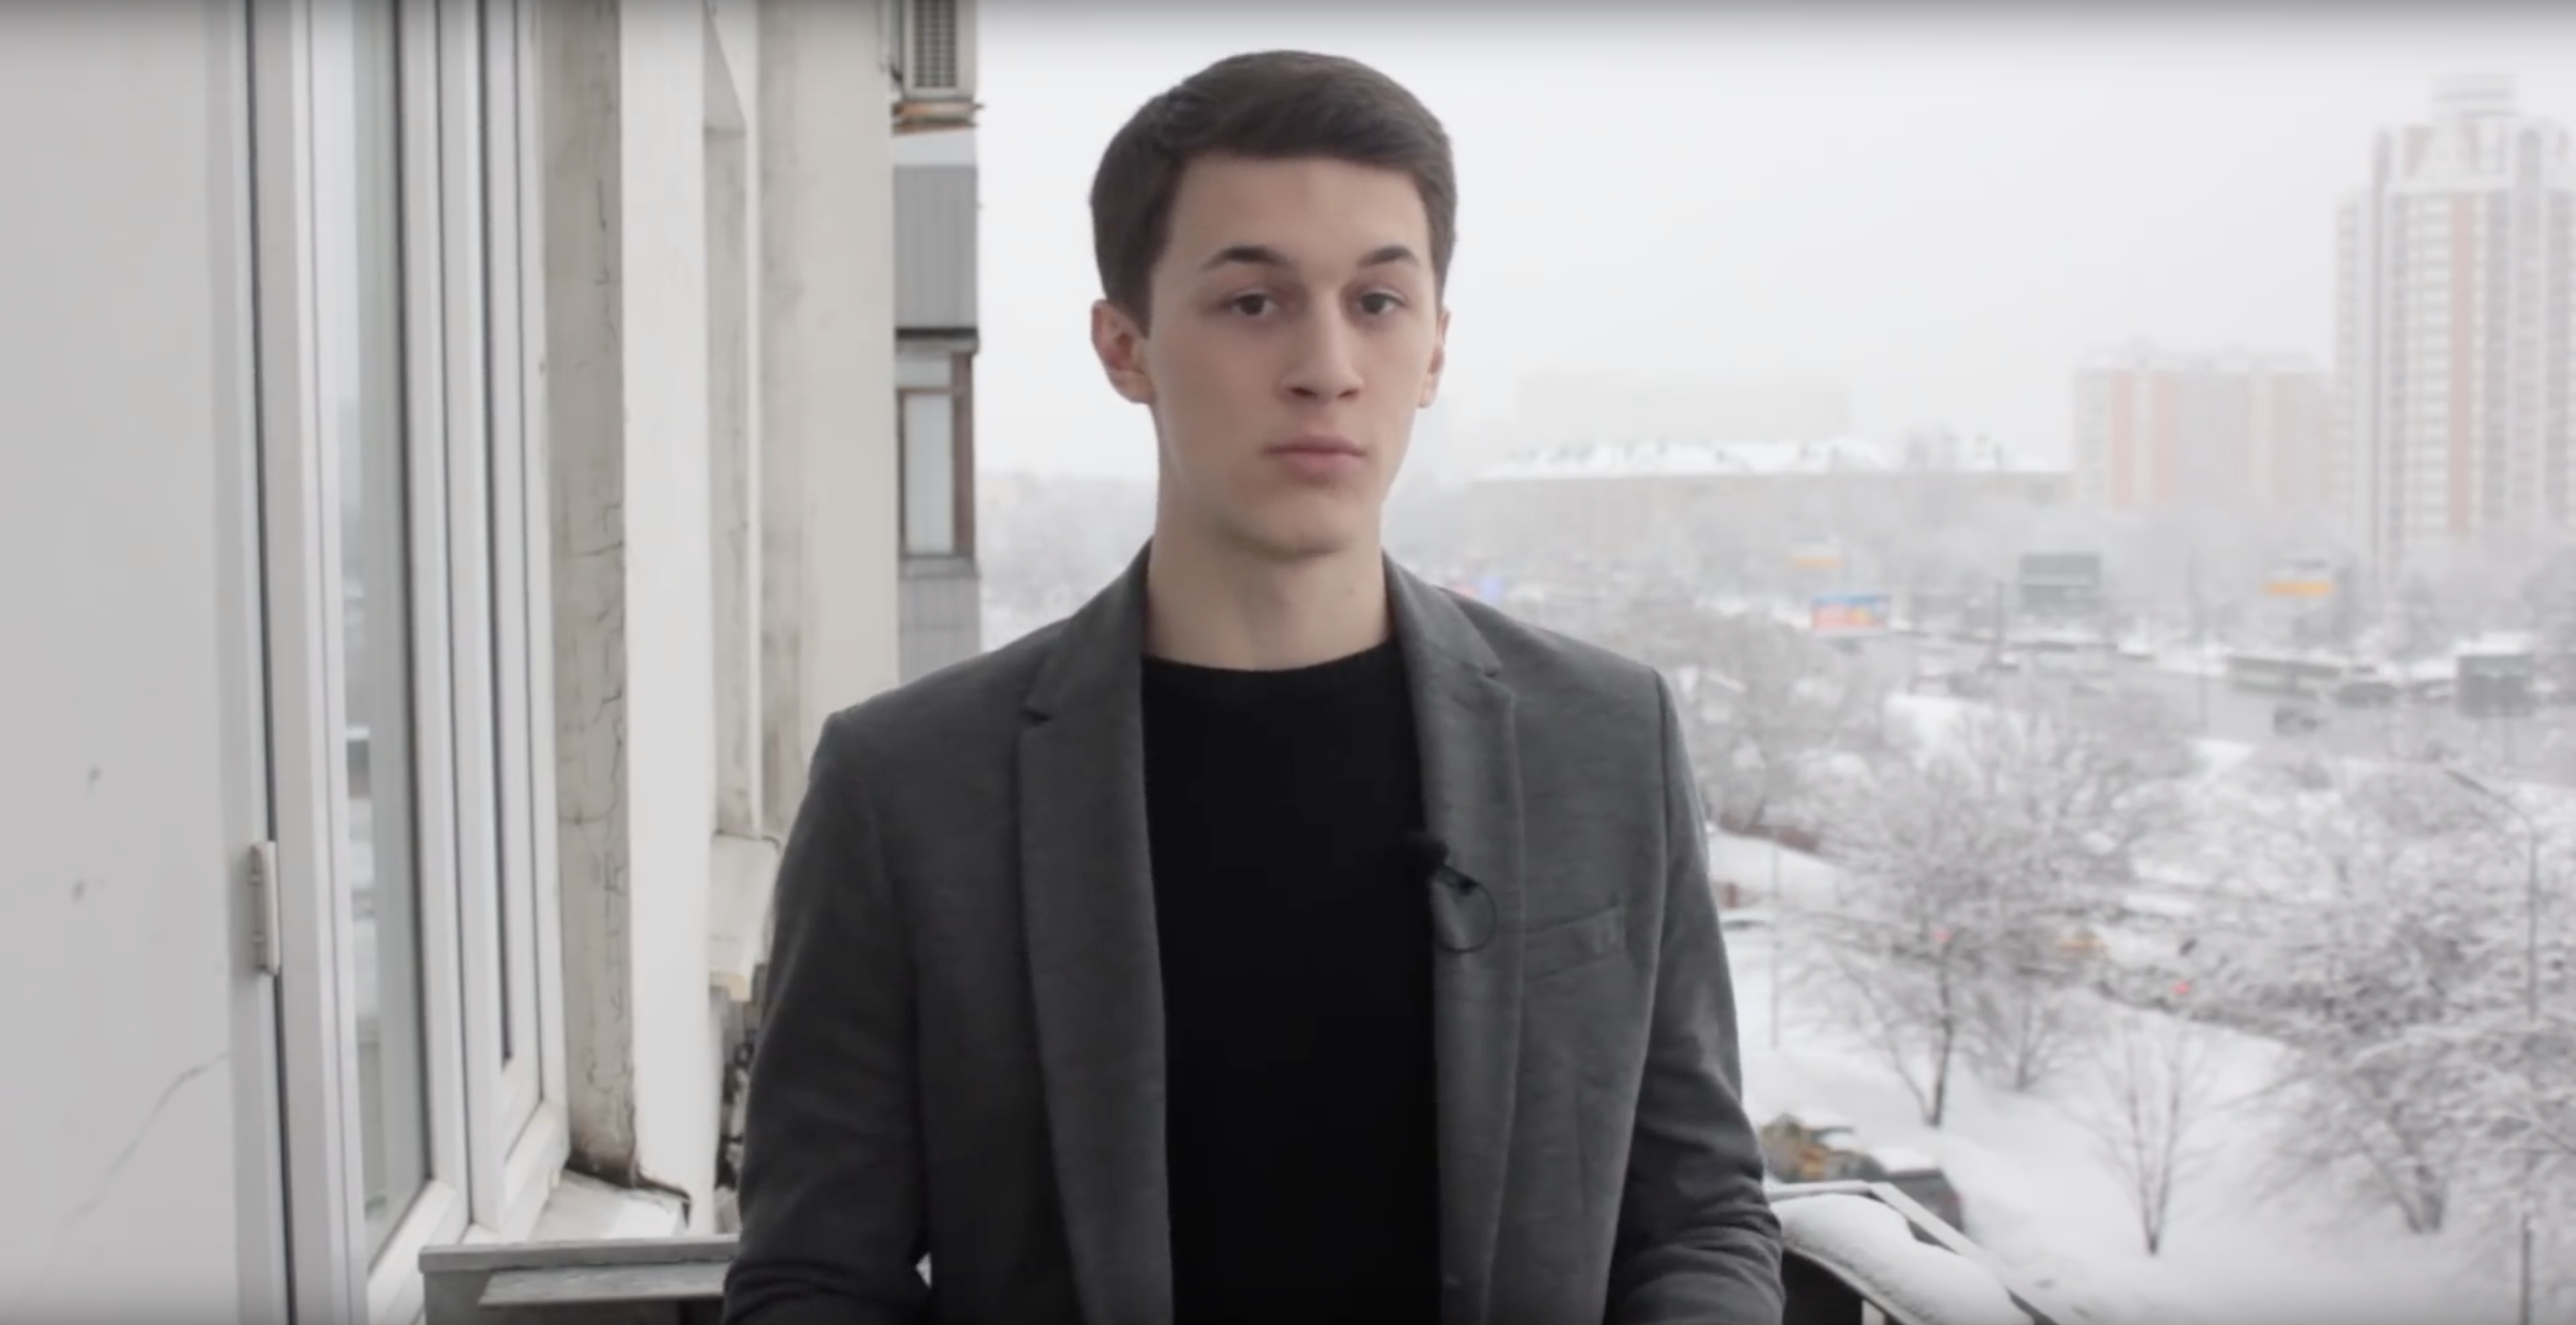 Ранее против студента НИУ ВШЭ выдвинули обвинение в публичных призывах к экстремизму в интернете Кадр: © youtube / Блог Жукова